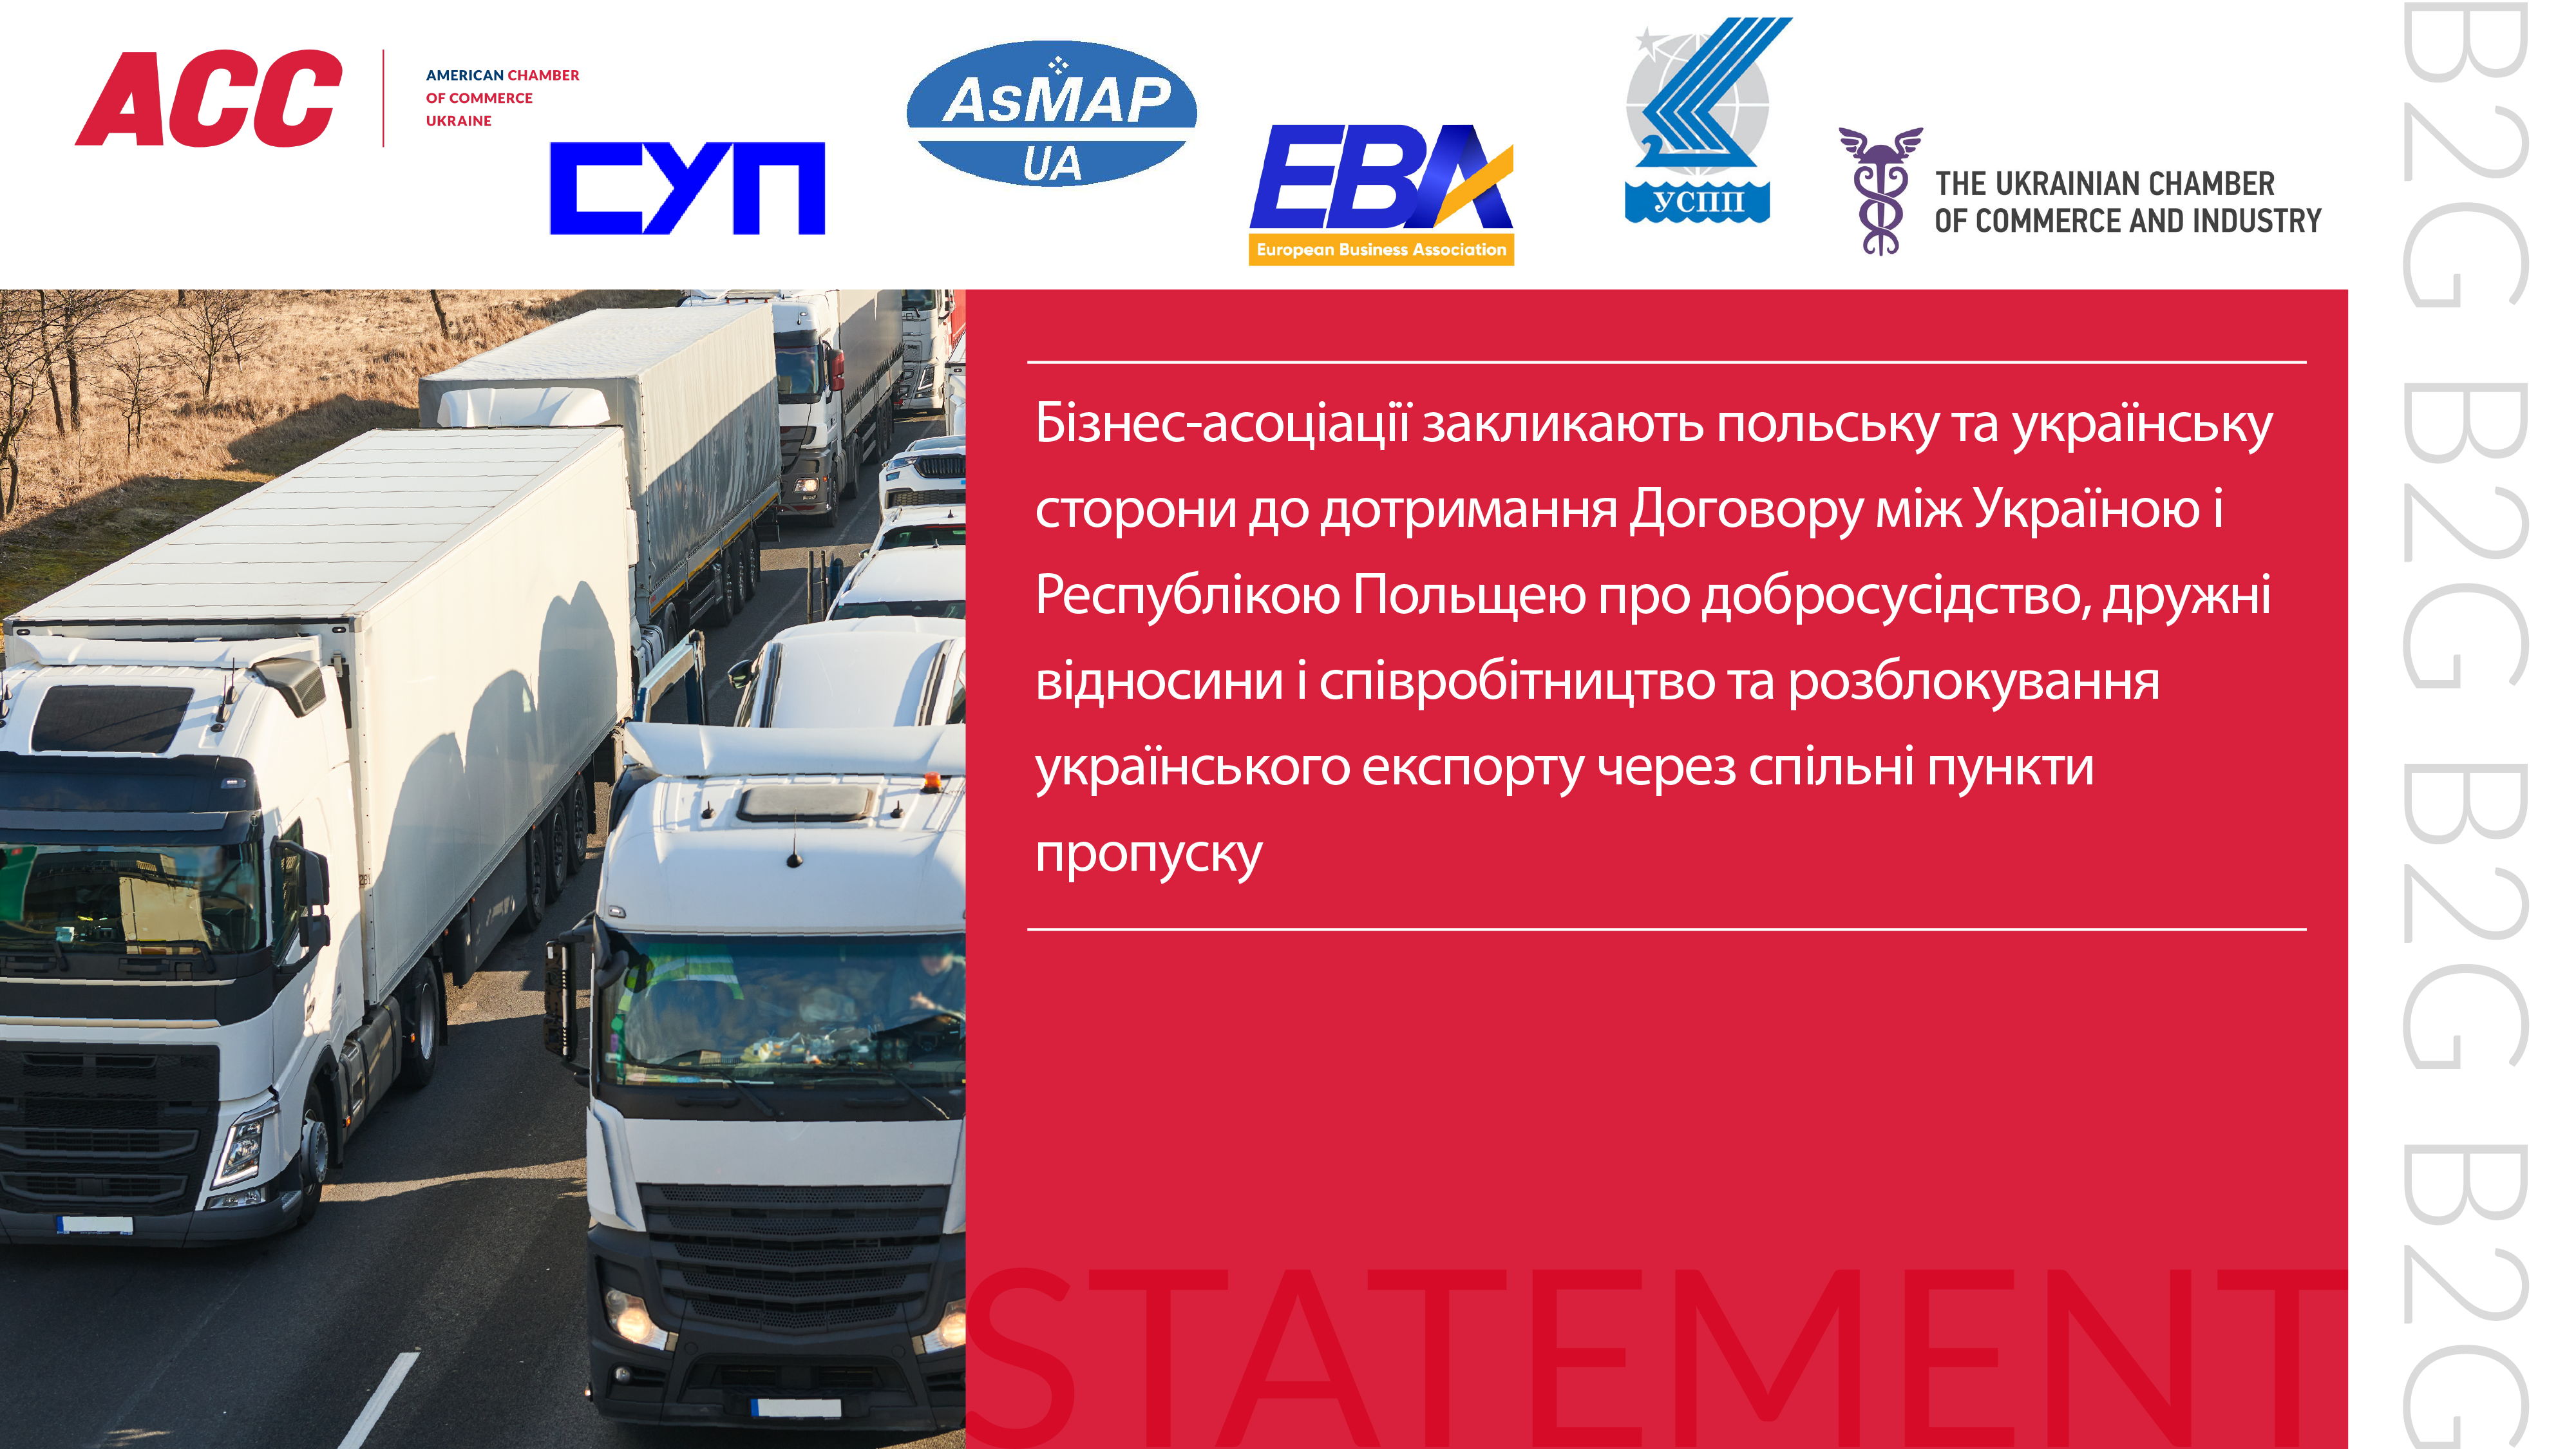 Бізнес-асоціації закликають польську та українську сторони до дотримання Договору між Україною і Республікою Польщею про добросусідство, дружні відносини і співробітництво та розблокування українського експорту через спільні пункти пропуску